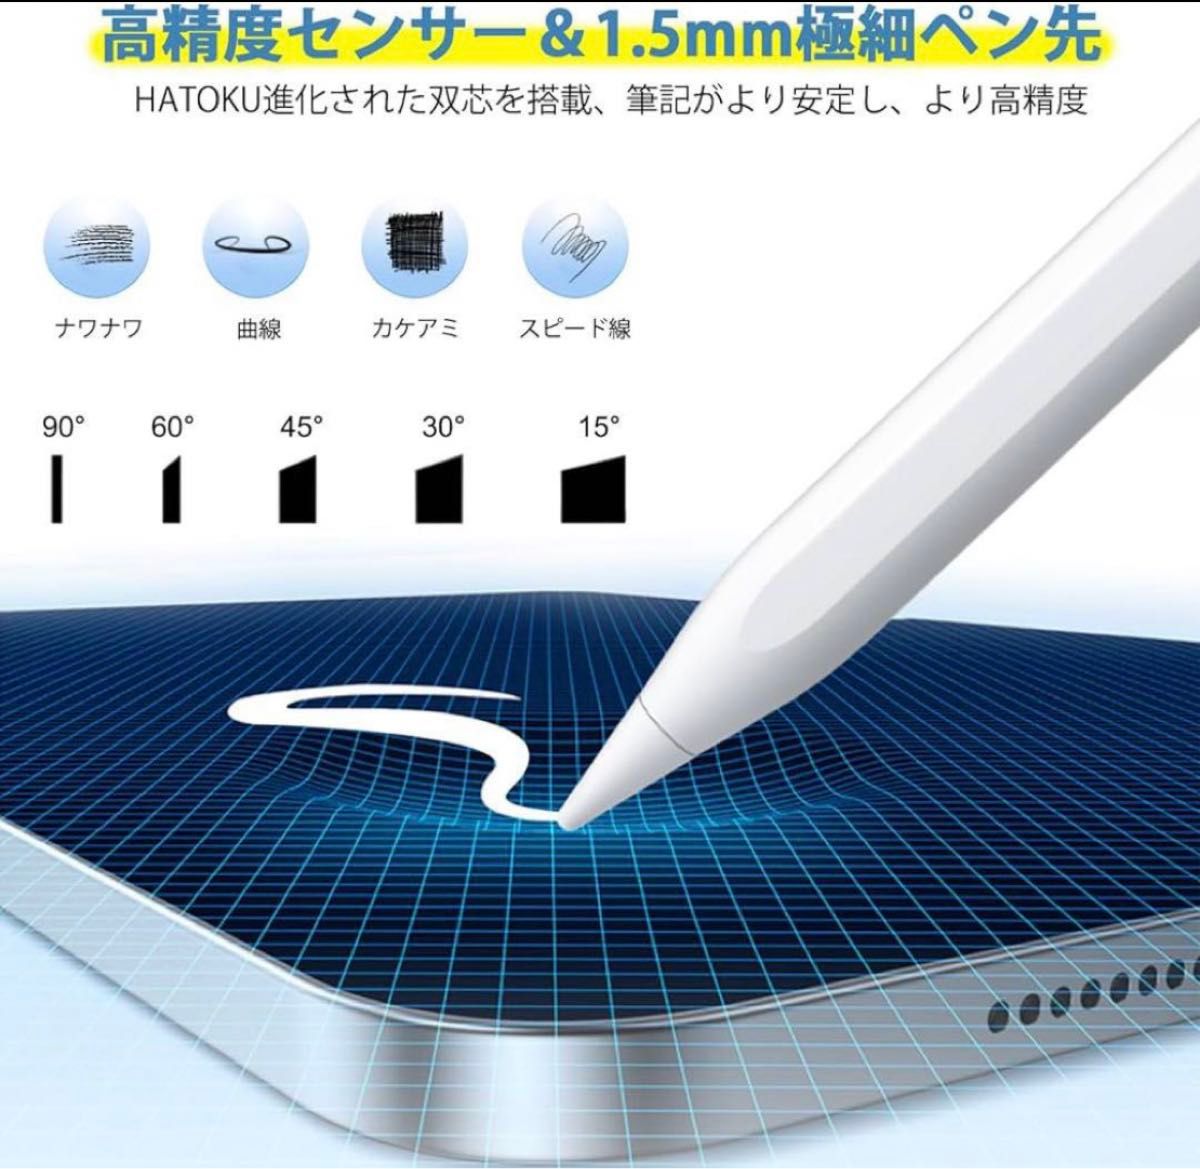 【高感度】 iPad タッチペン スタイラスペン 急速充電【極細】